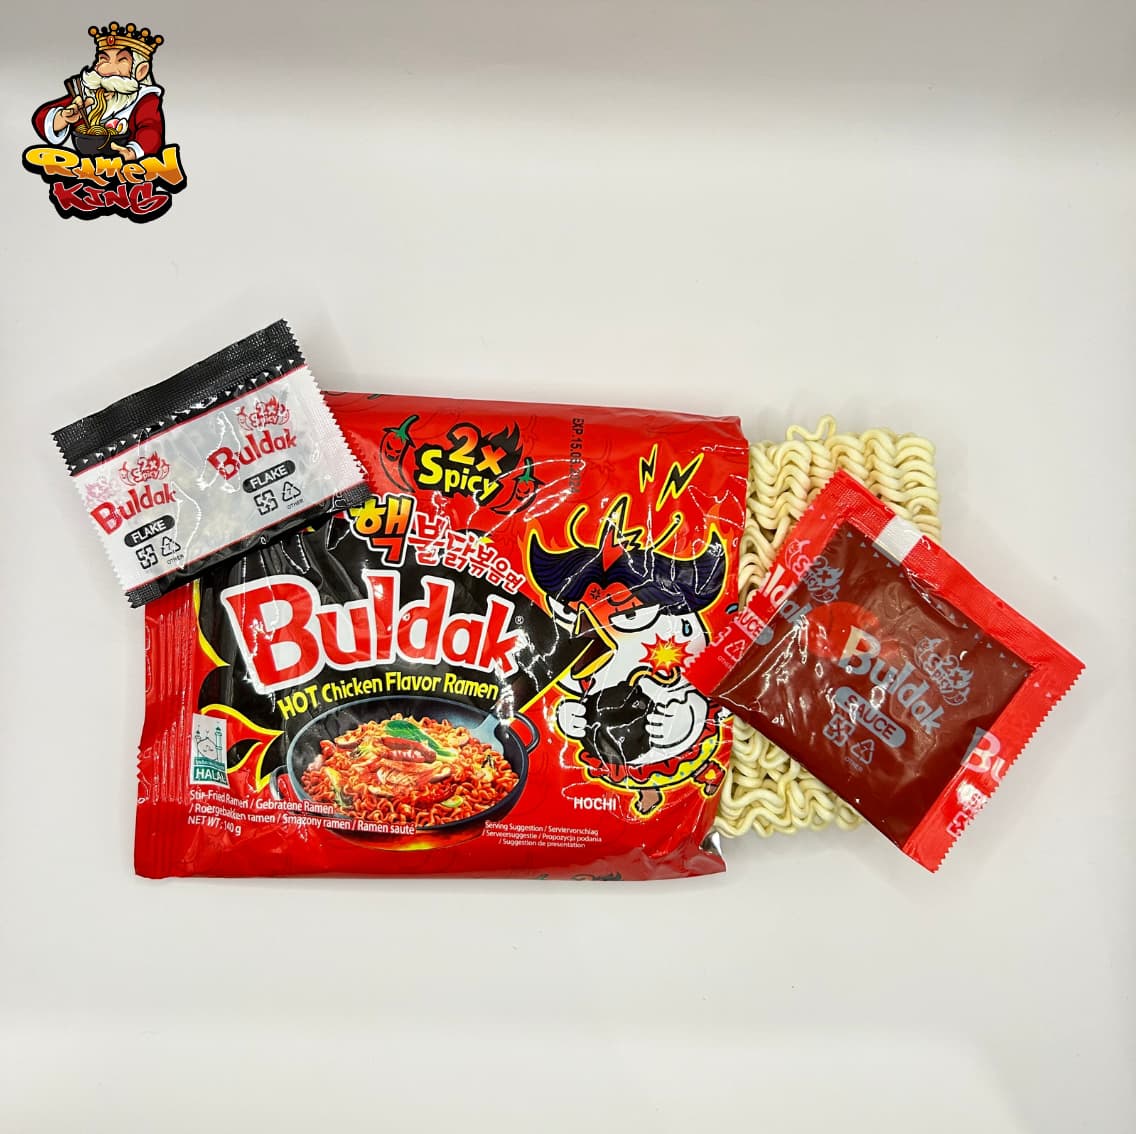 Geöffnetes Paket von Buldak 2x Spicy Ramen mit sichtbarem Inhalt. Zu sehen sind die Nudeln, ein schwarzer Beutel mit "Flake" und ein roter Beutel mit "Sauce", die alle neben der auffälligen roten Verpackung liegen.